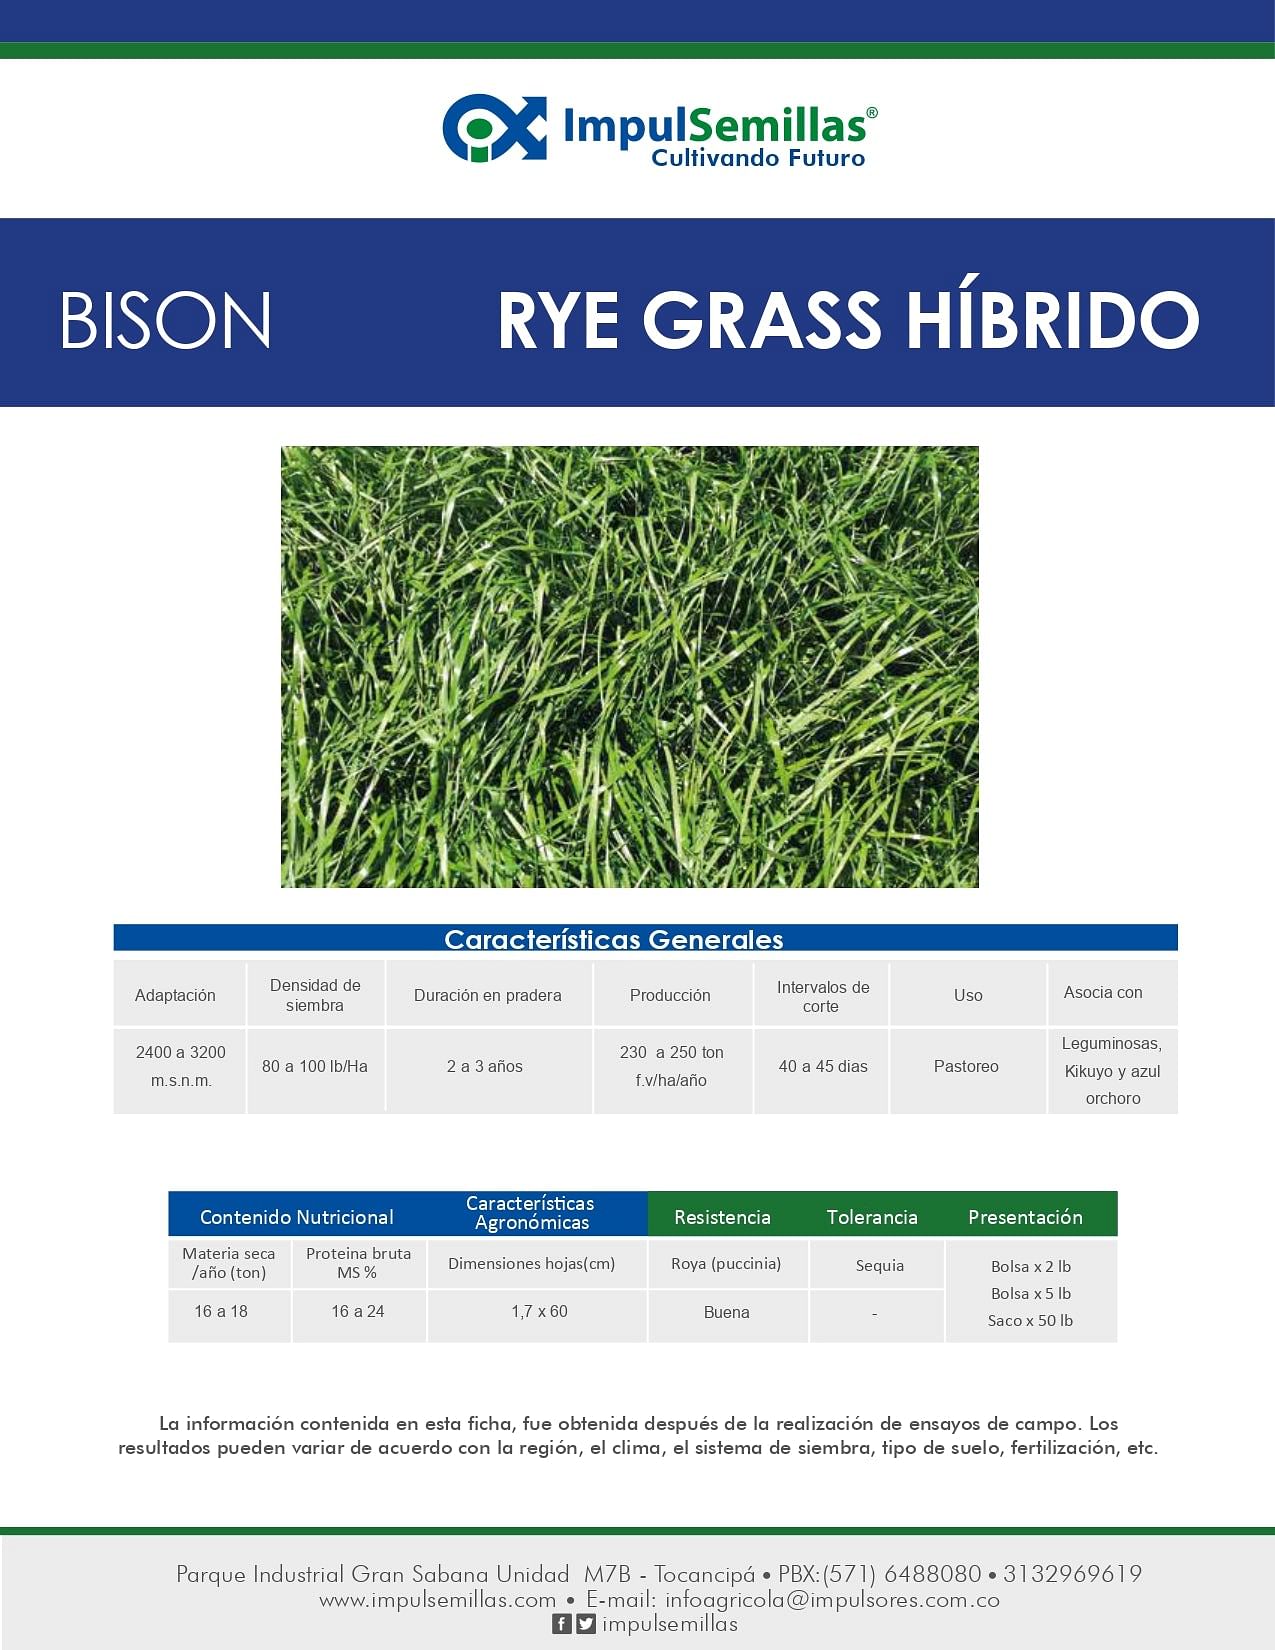 Rye Grass Híbrido Bison x 22.7 Kg.